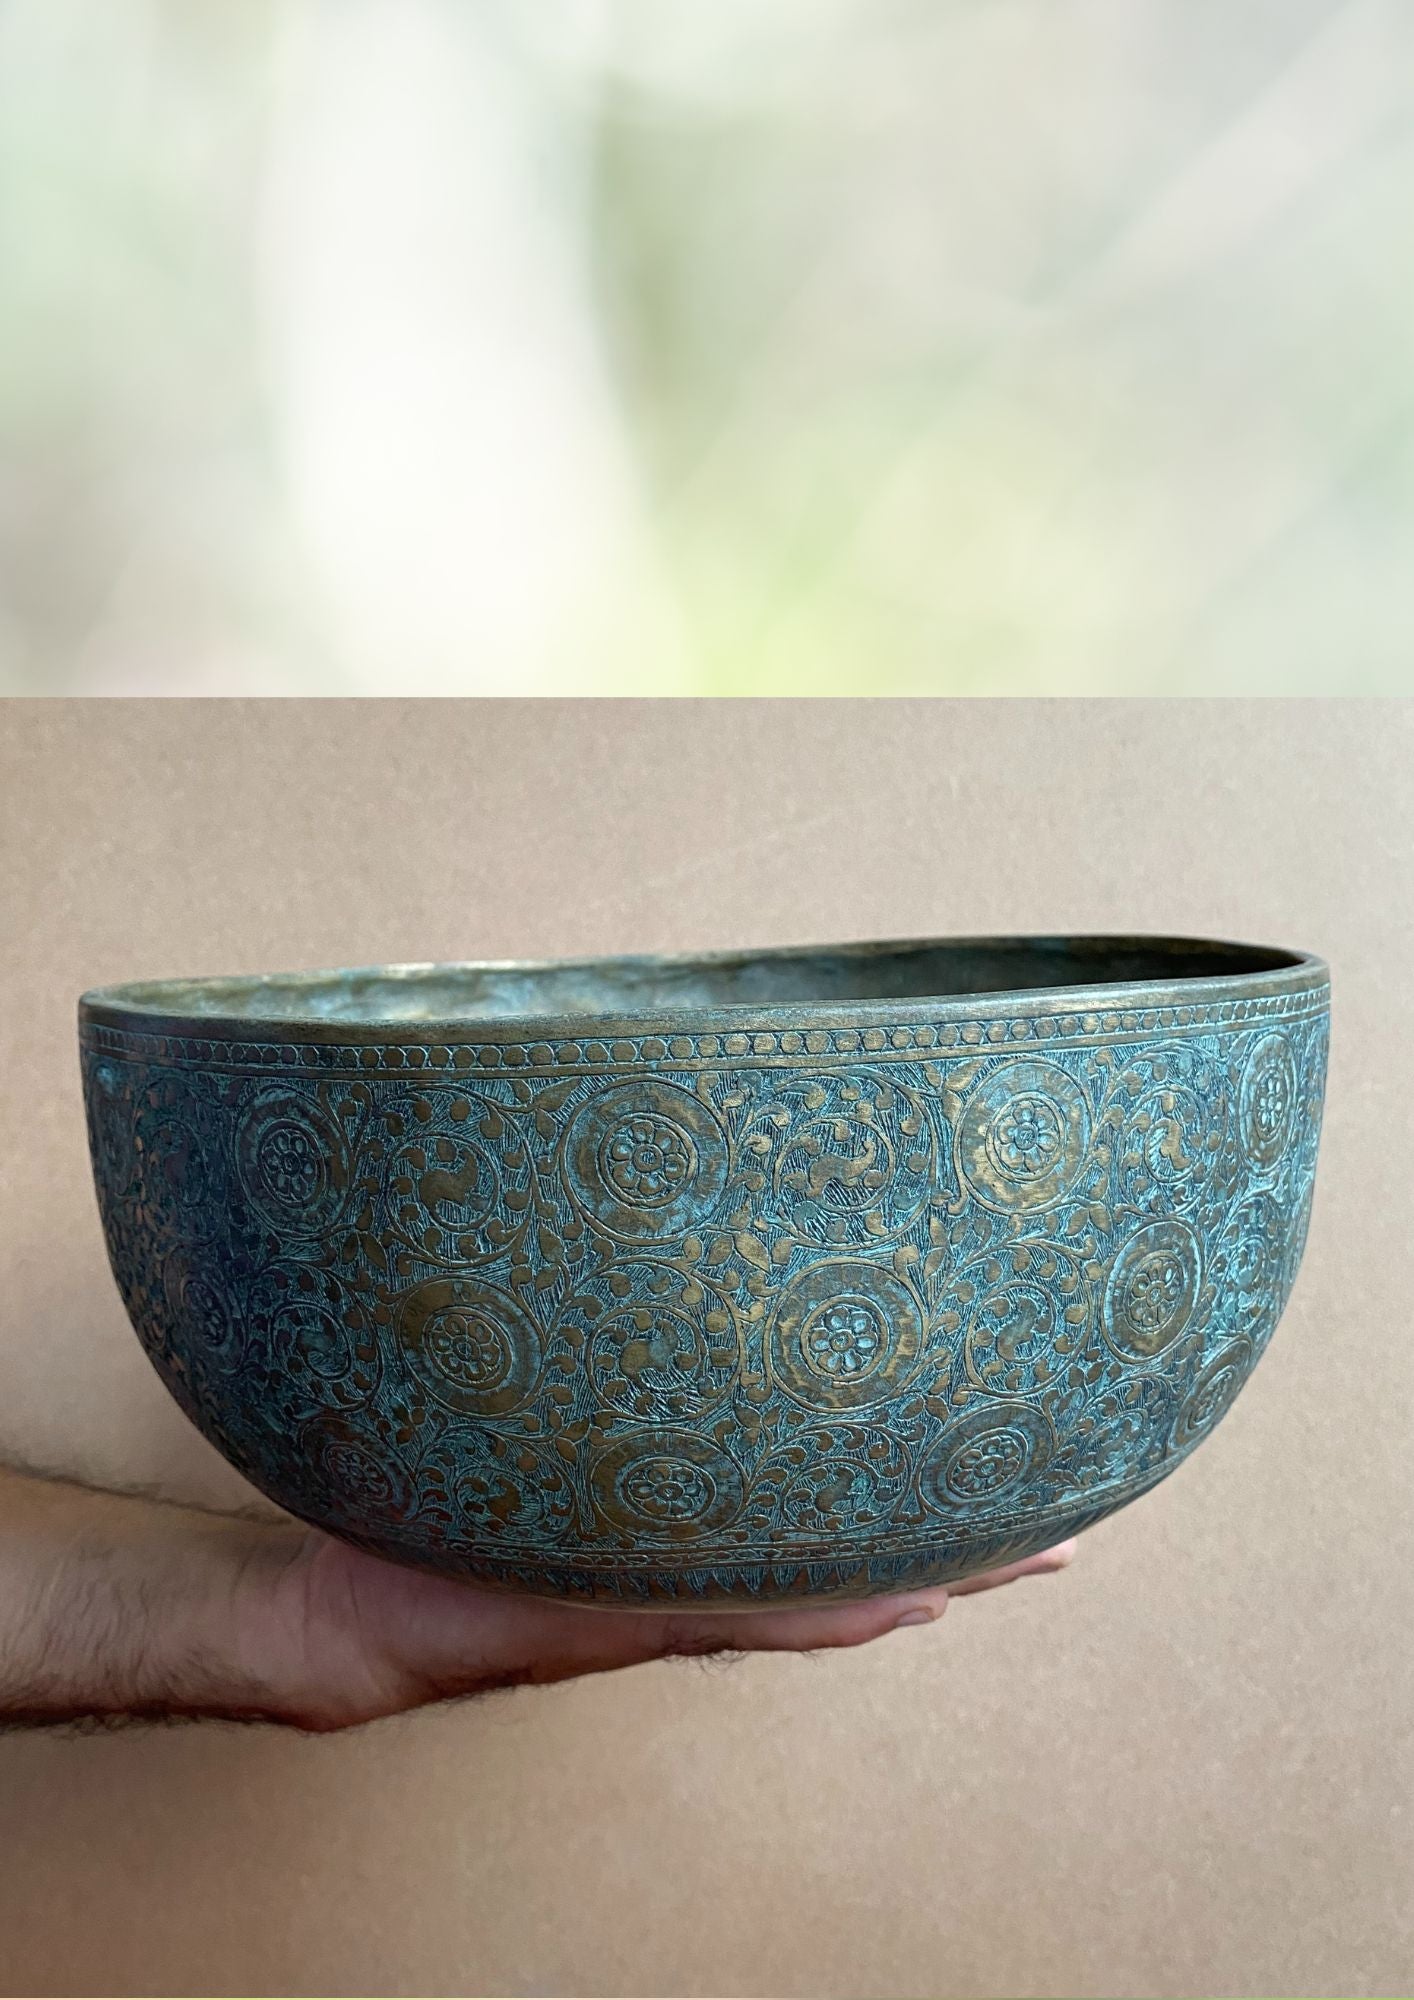 Jambati Bowl with Motif Carving for spiritual healing.